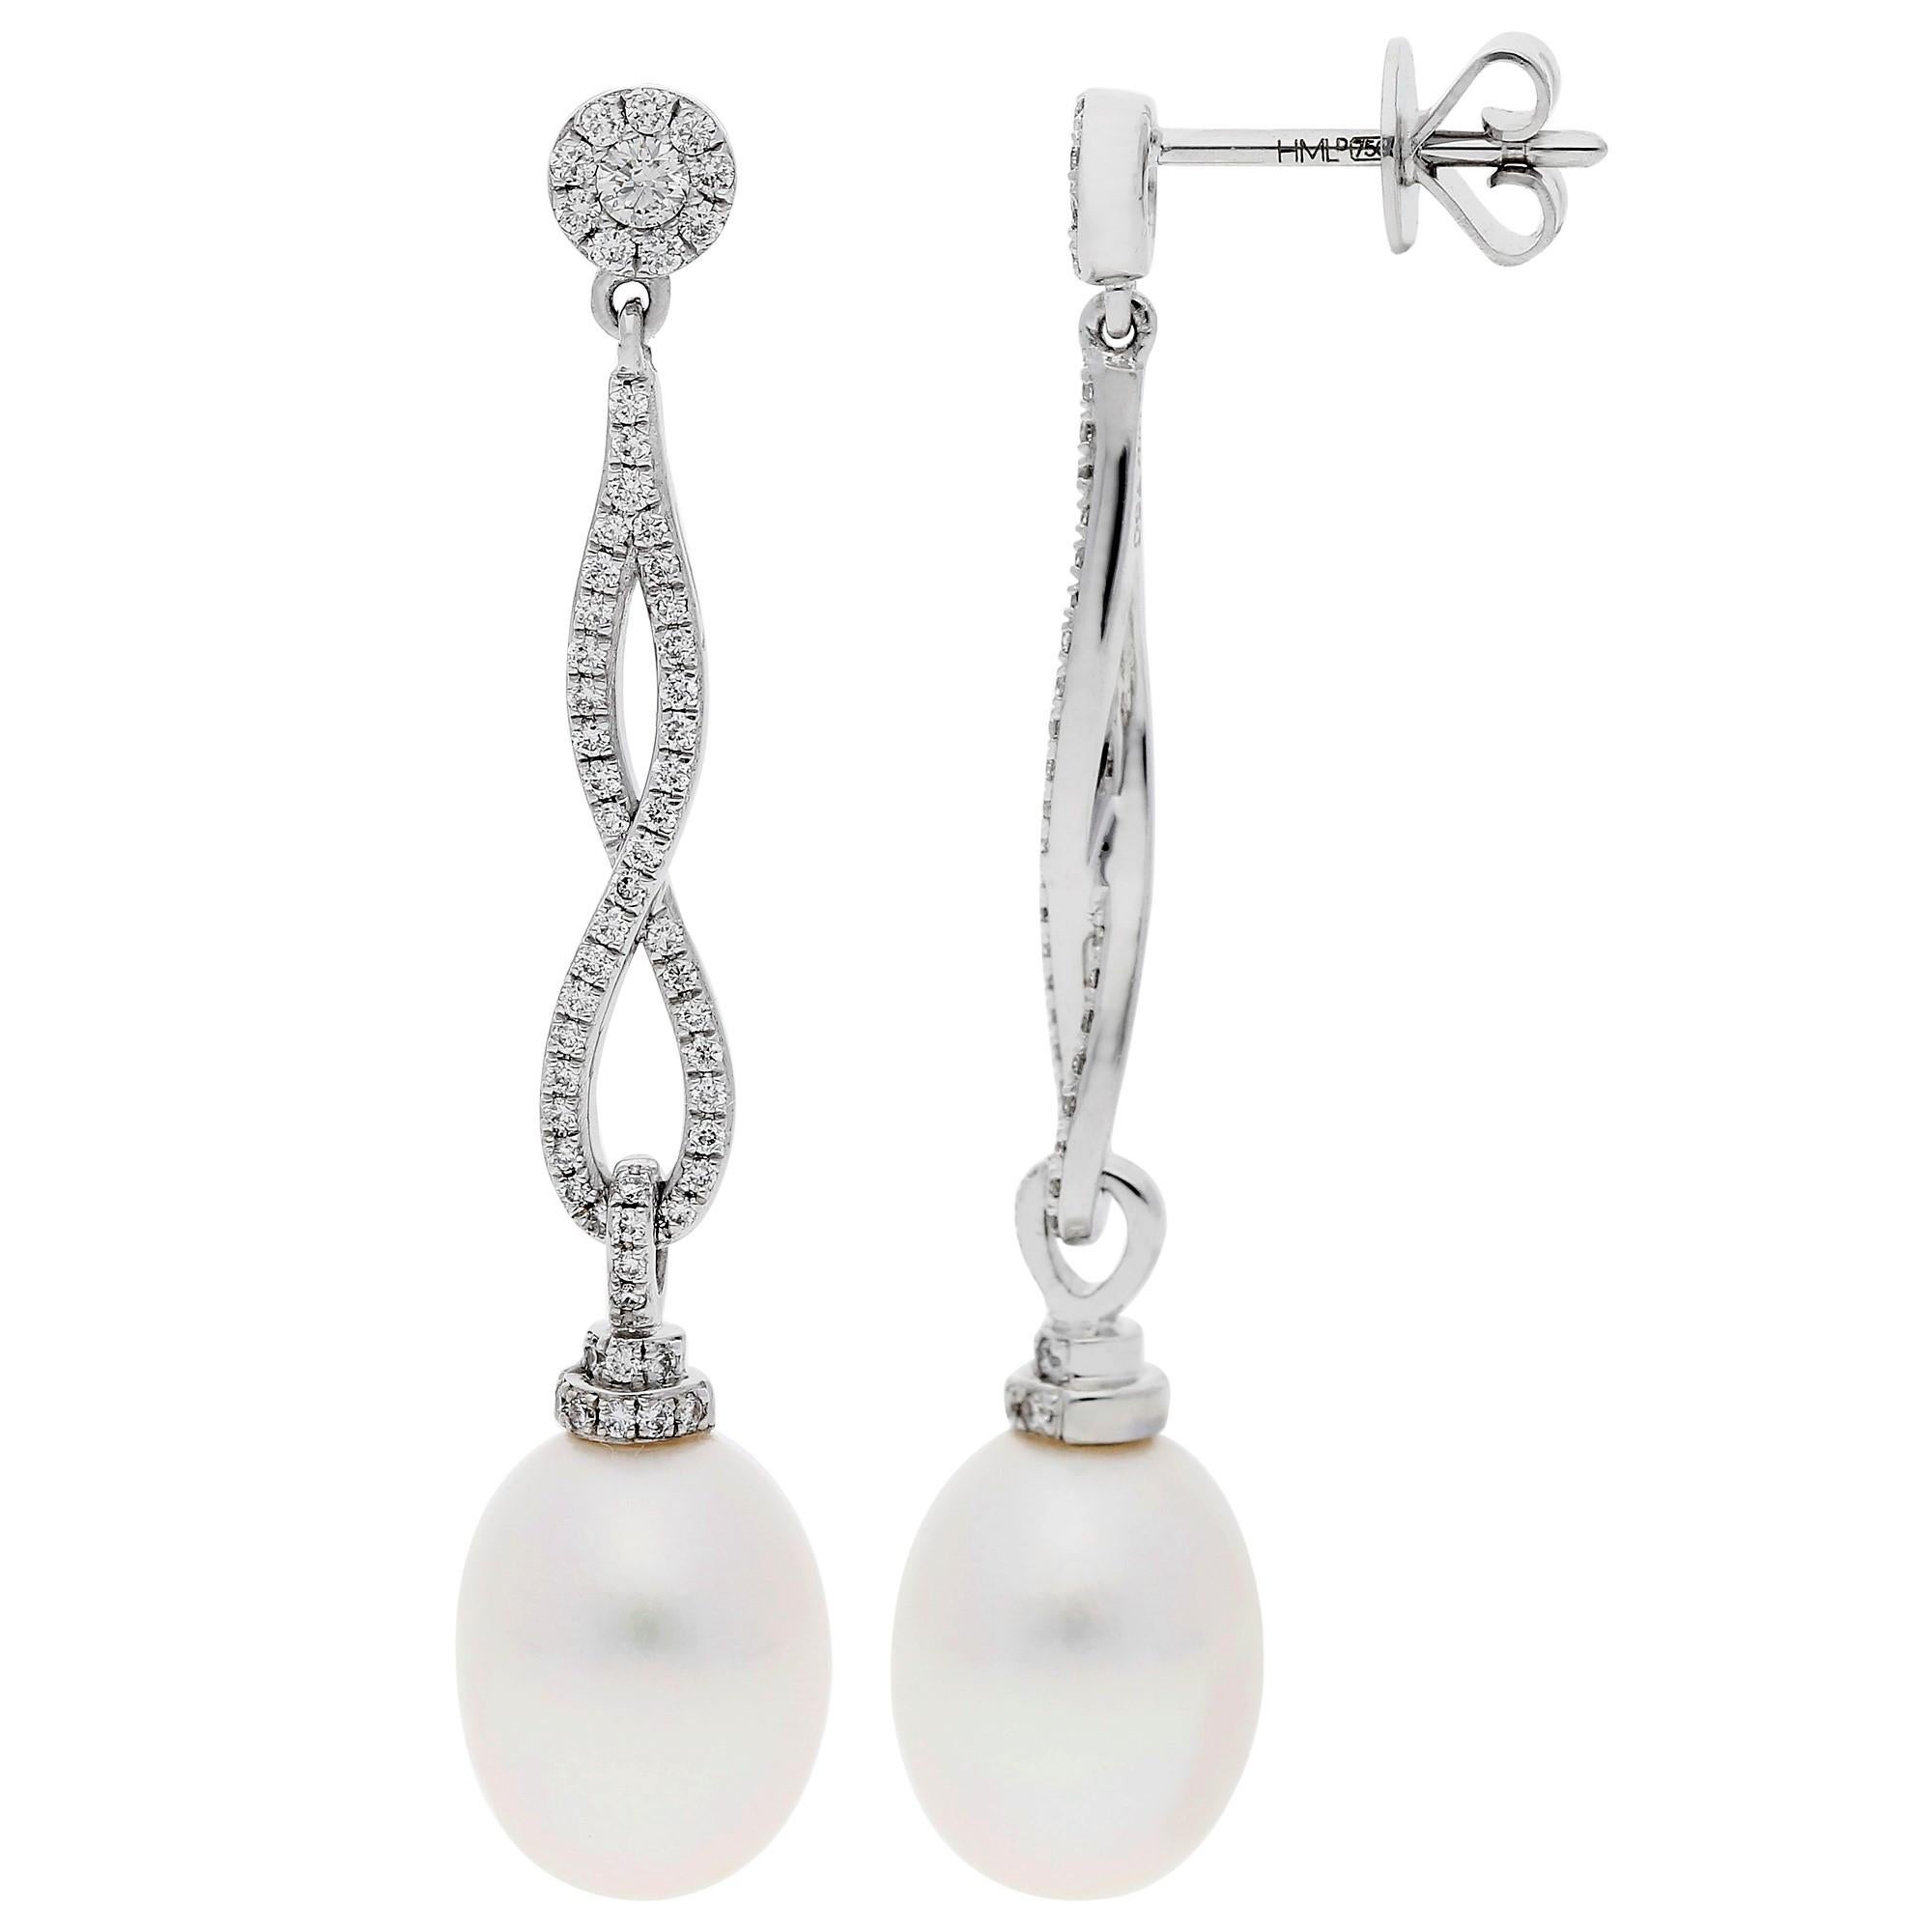 18ct Weißgold Perle & Diamant Unendlichkeit Tropfen Ohrringe

Umarmen Sie zeitlose Eleganz mit unseren 18 Karat Weißgold Perlen- und Diamanttropfen-Ohrringen, ein Symbol für unendliche Raffinesse. Jeder Ohrring besteht aus einer glänzenden, prallen